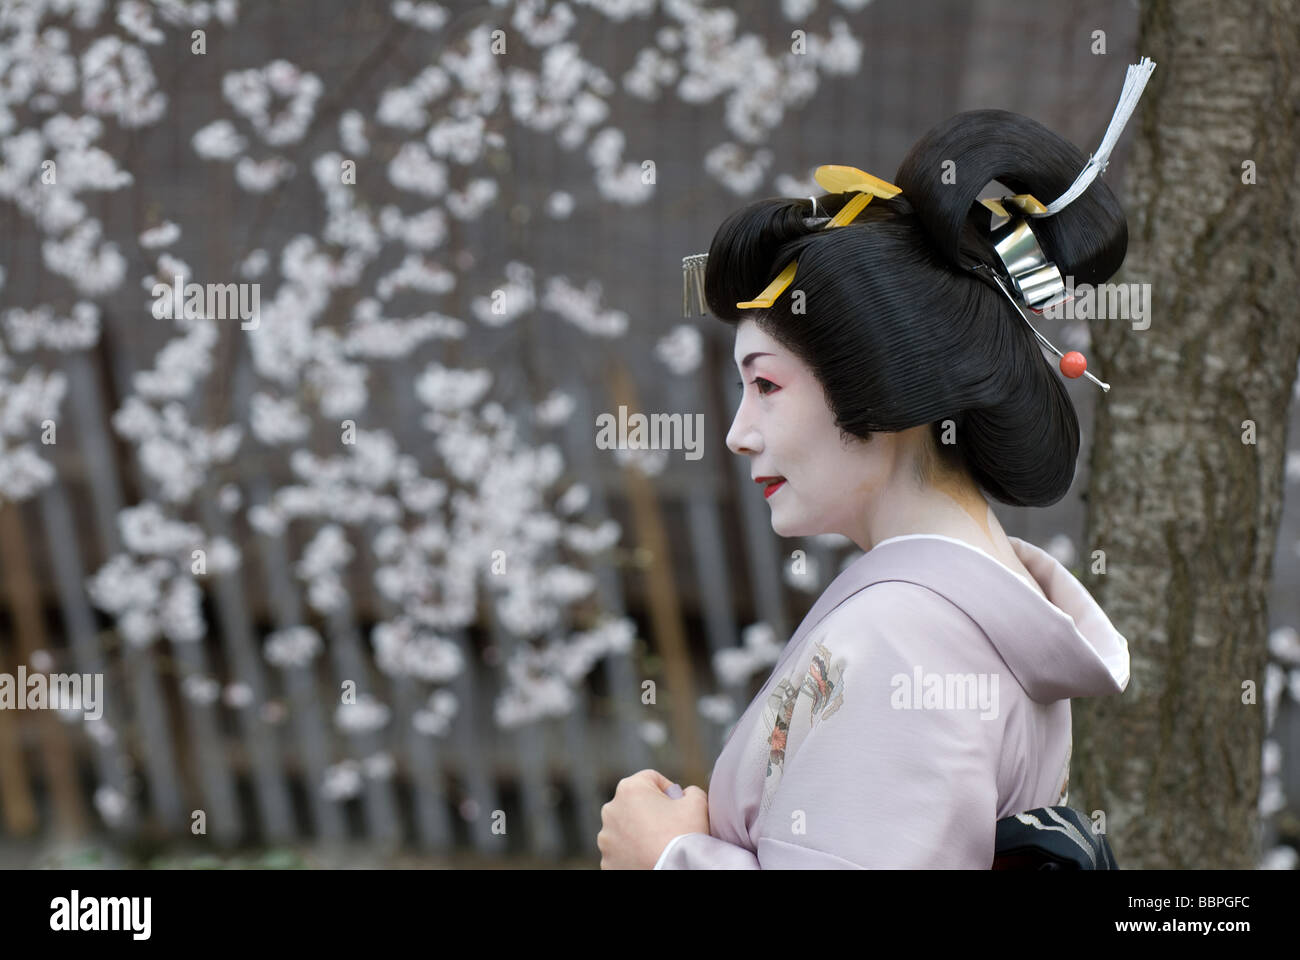 Un retrato de una geisha, o geiko, durante la temporada de los cerezos en flor en Kioto, Japón Foto de stock